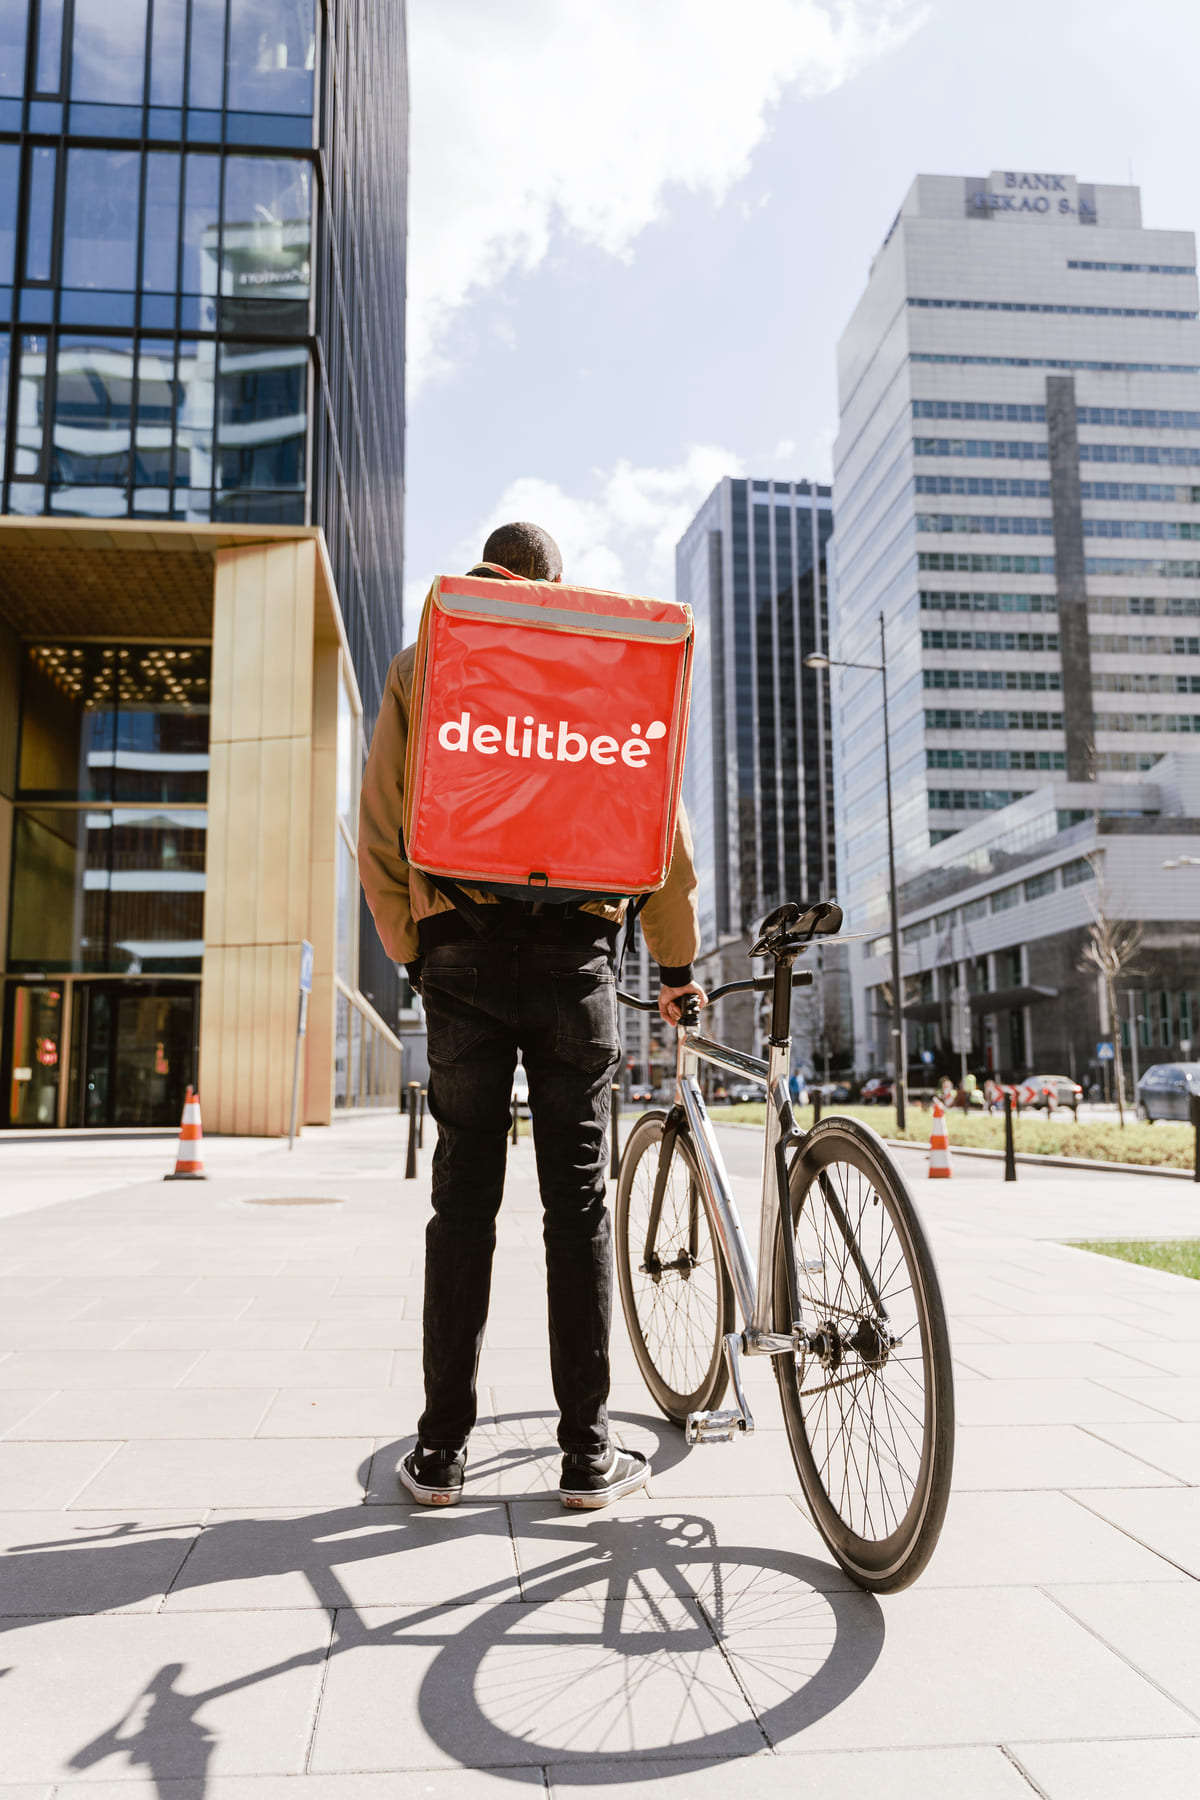 Repartidor de comida a domicilio en bici con una mochila isotermica con el logotipo de delitbee 